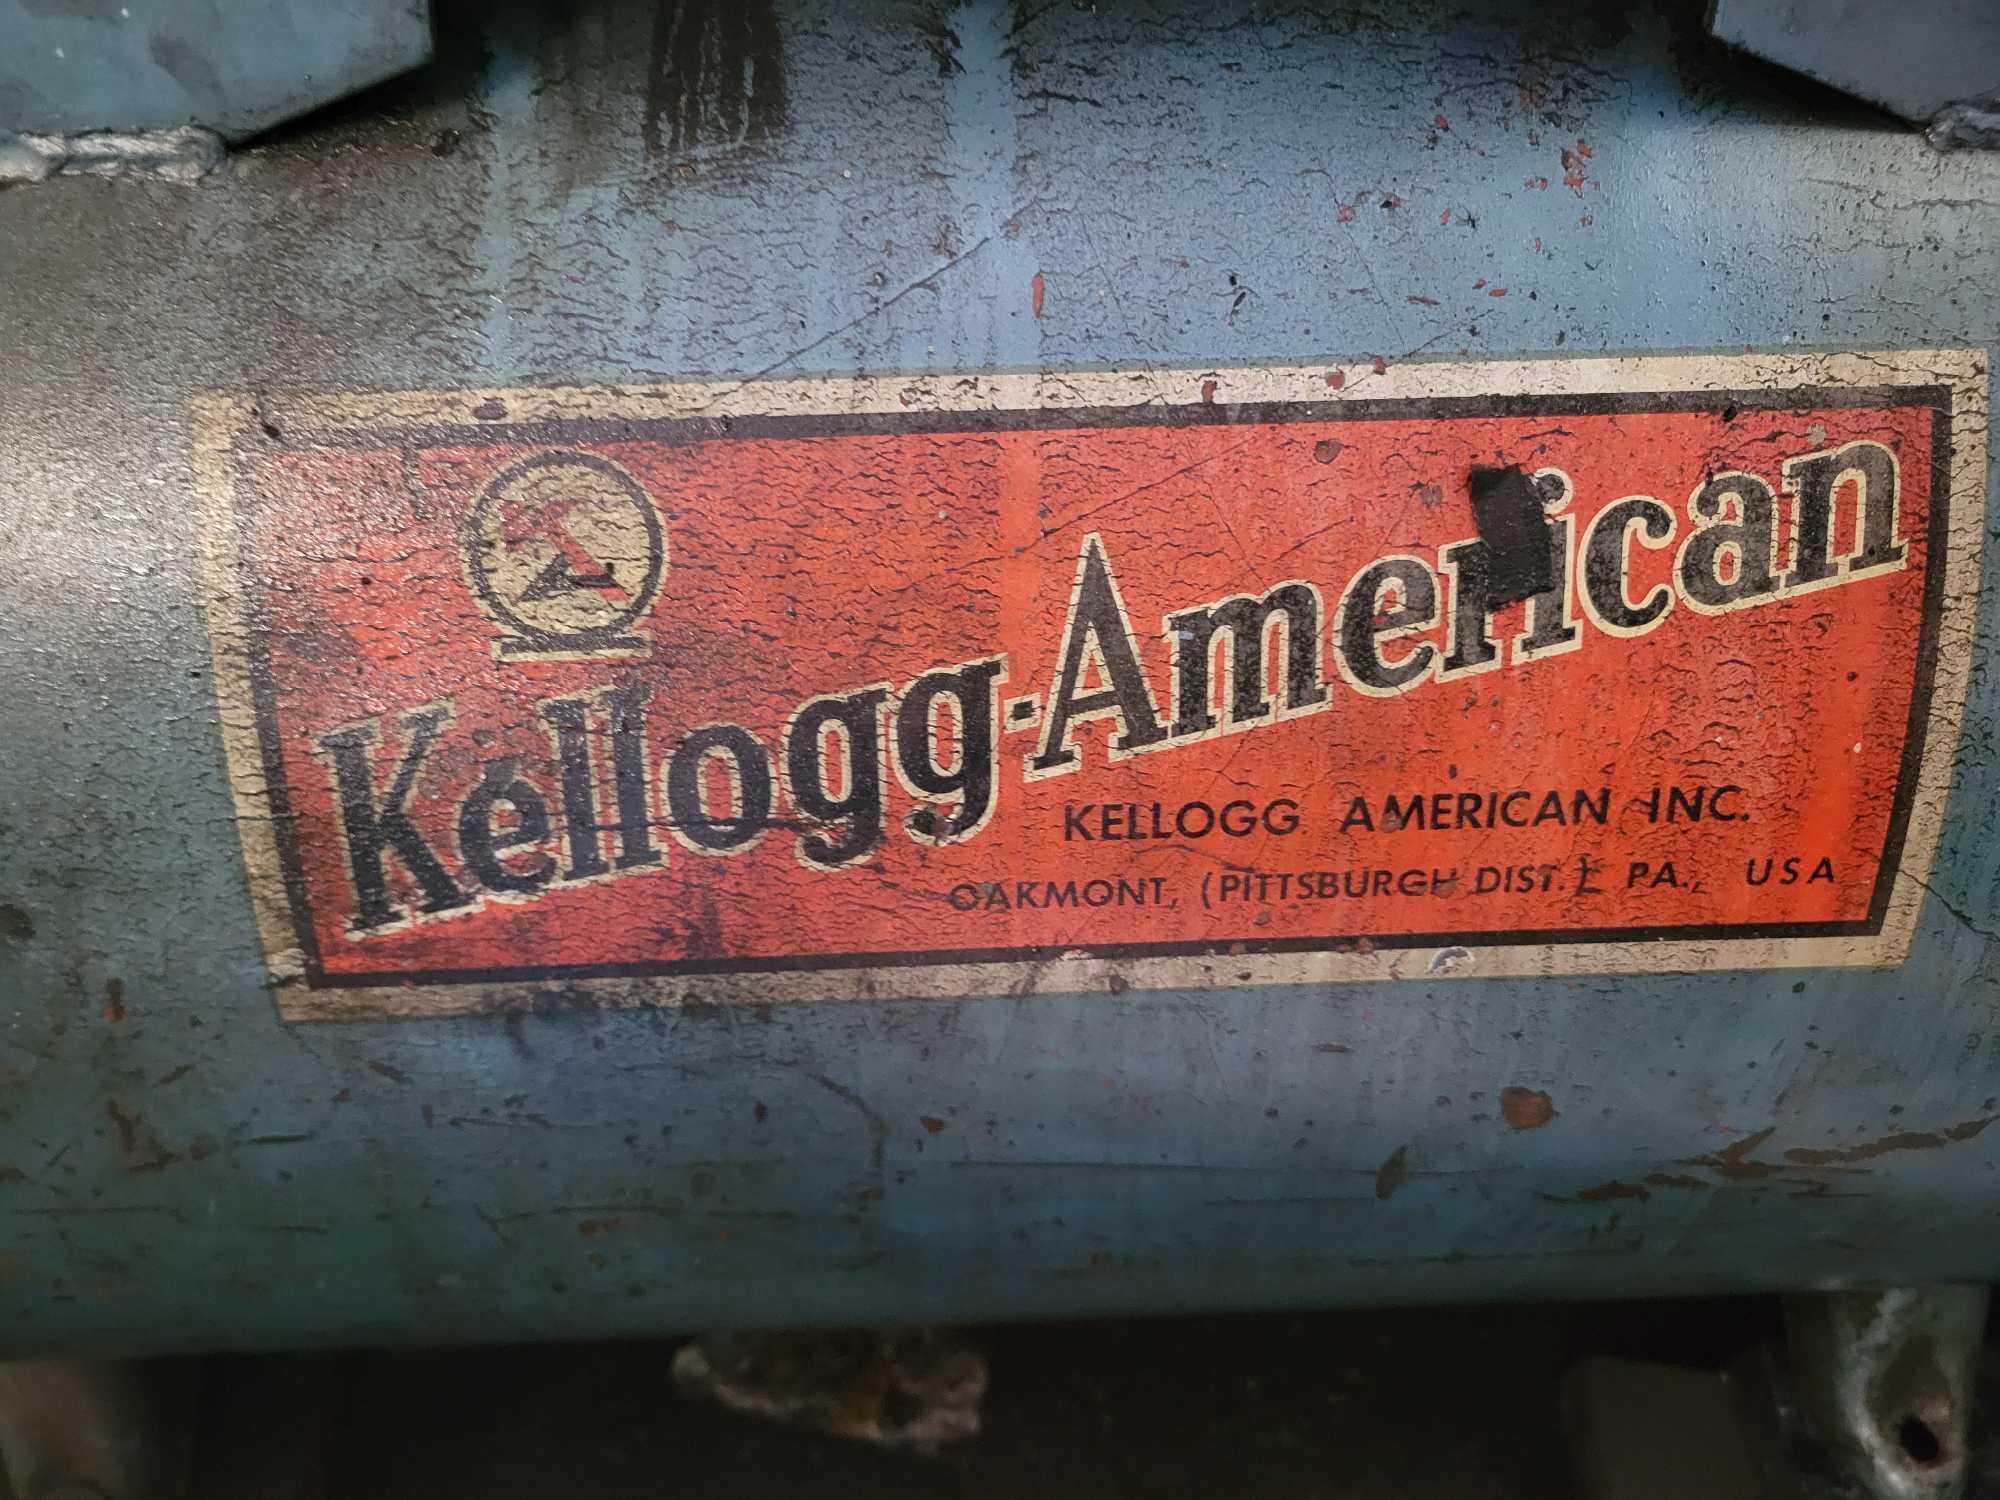 Kellogg-American air compressor